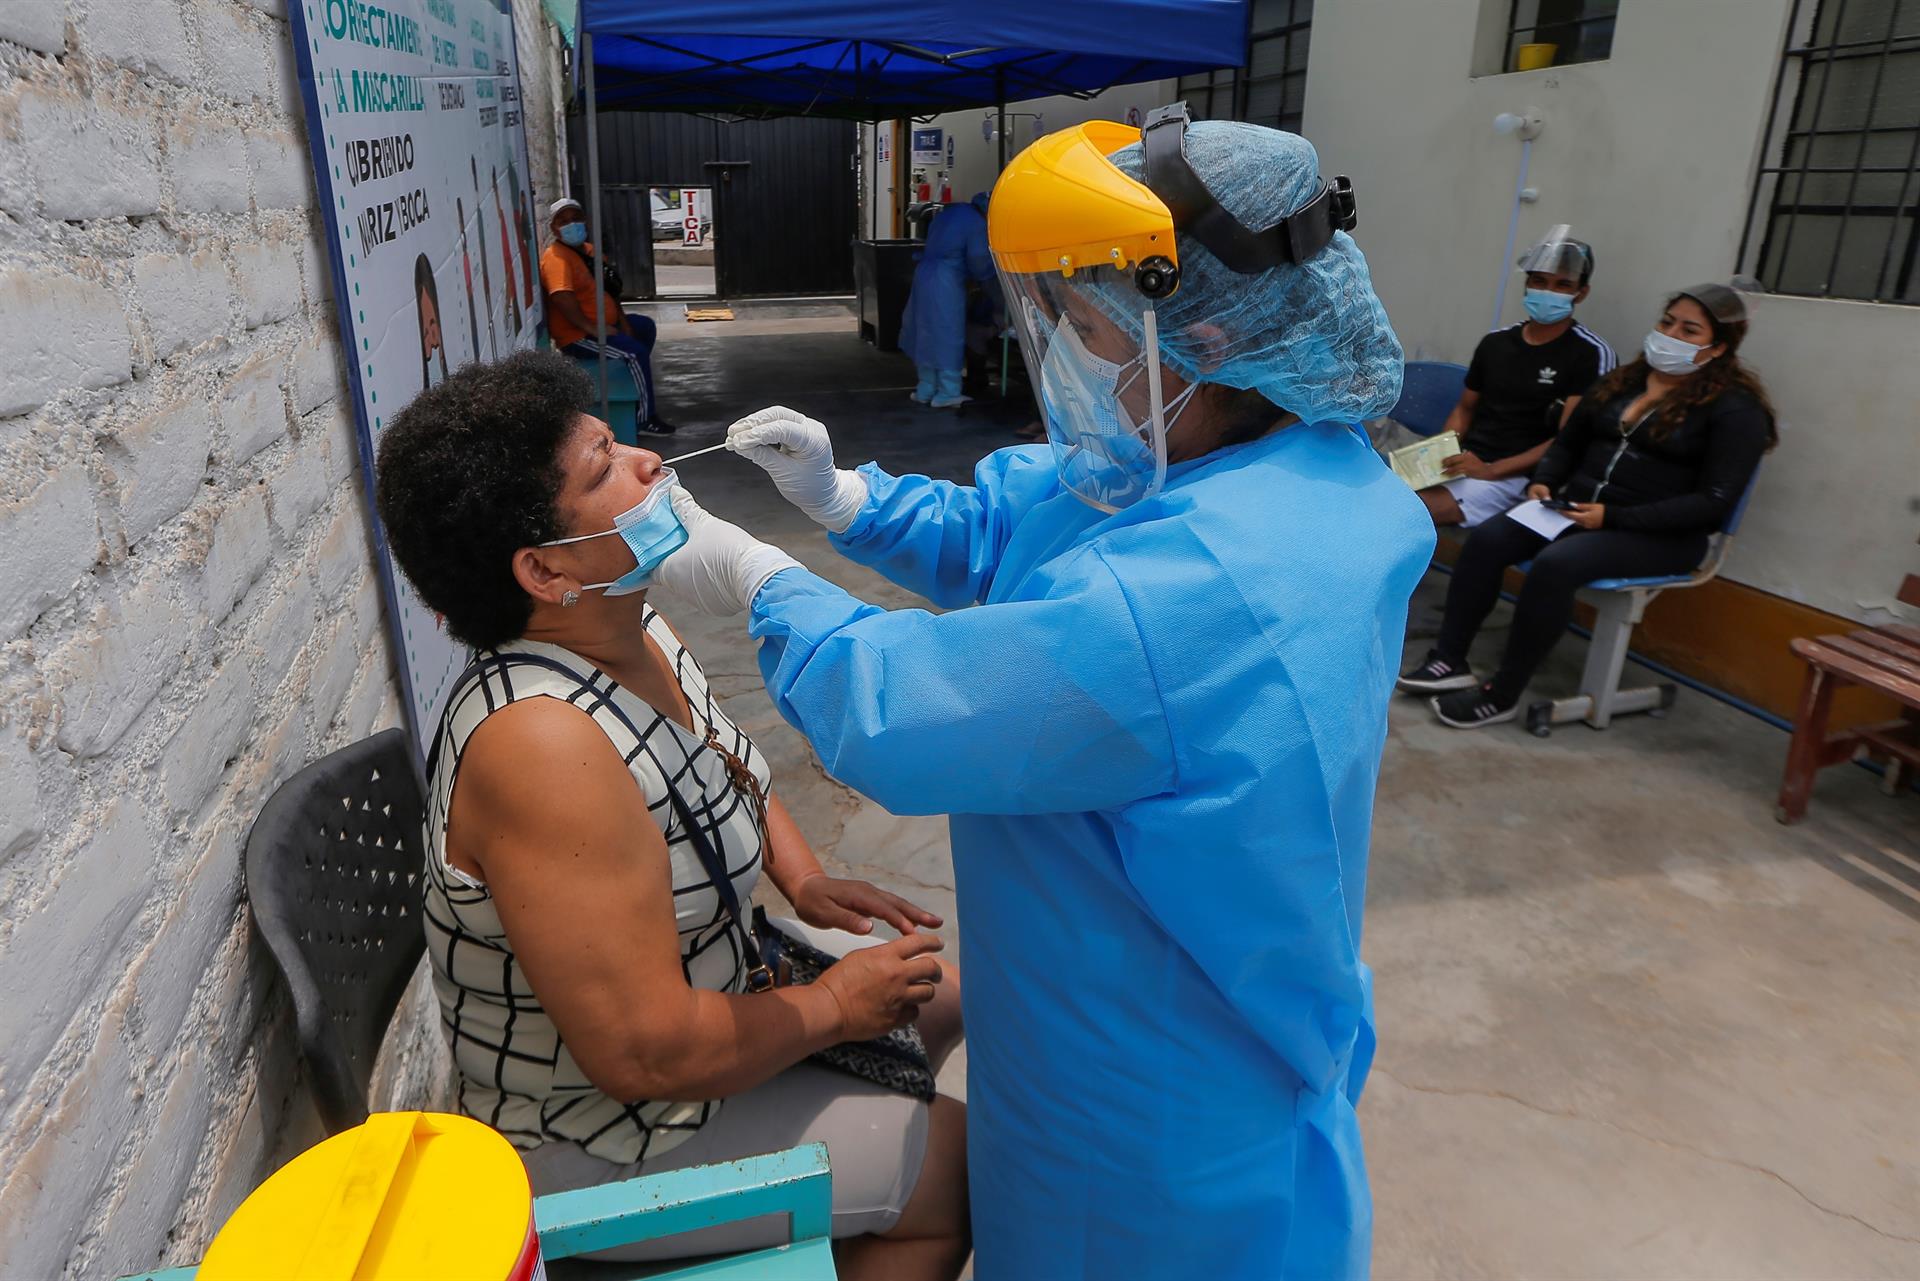 Un trabajo de investigación despeja diez dudas esenciales sobre ómicron, la nueva variante del coronavirus. (Foto Prensa Libre: EFE)

